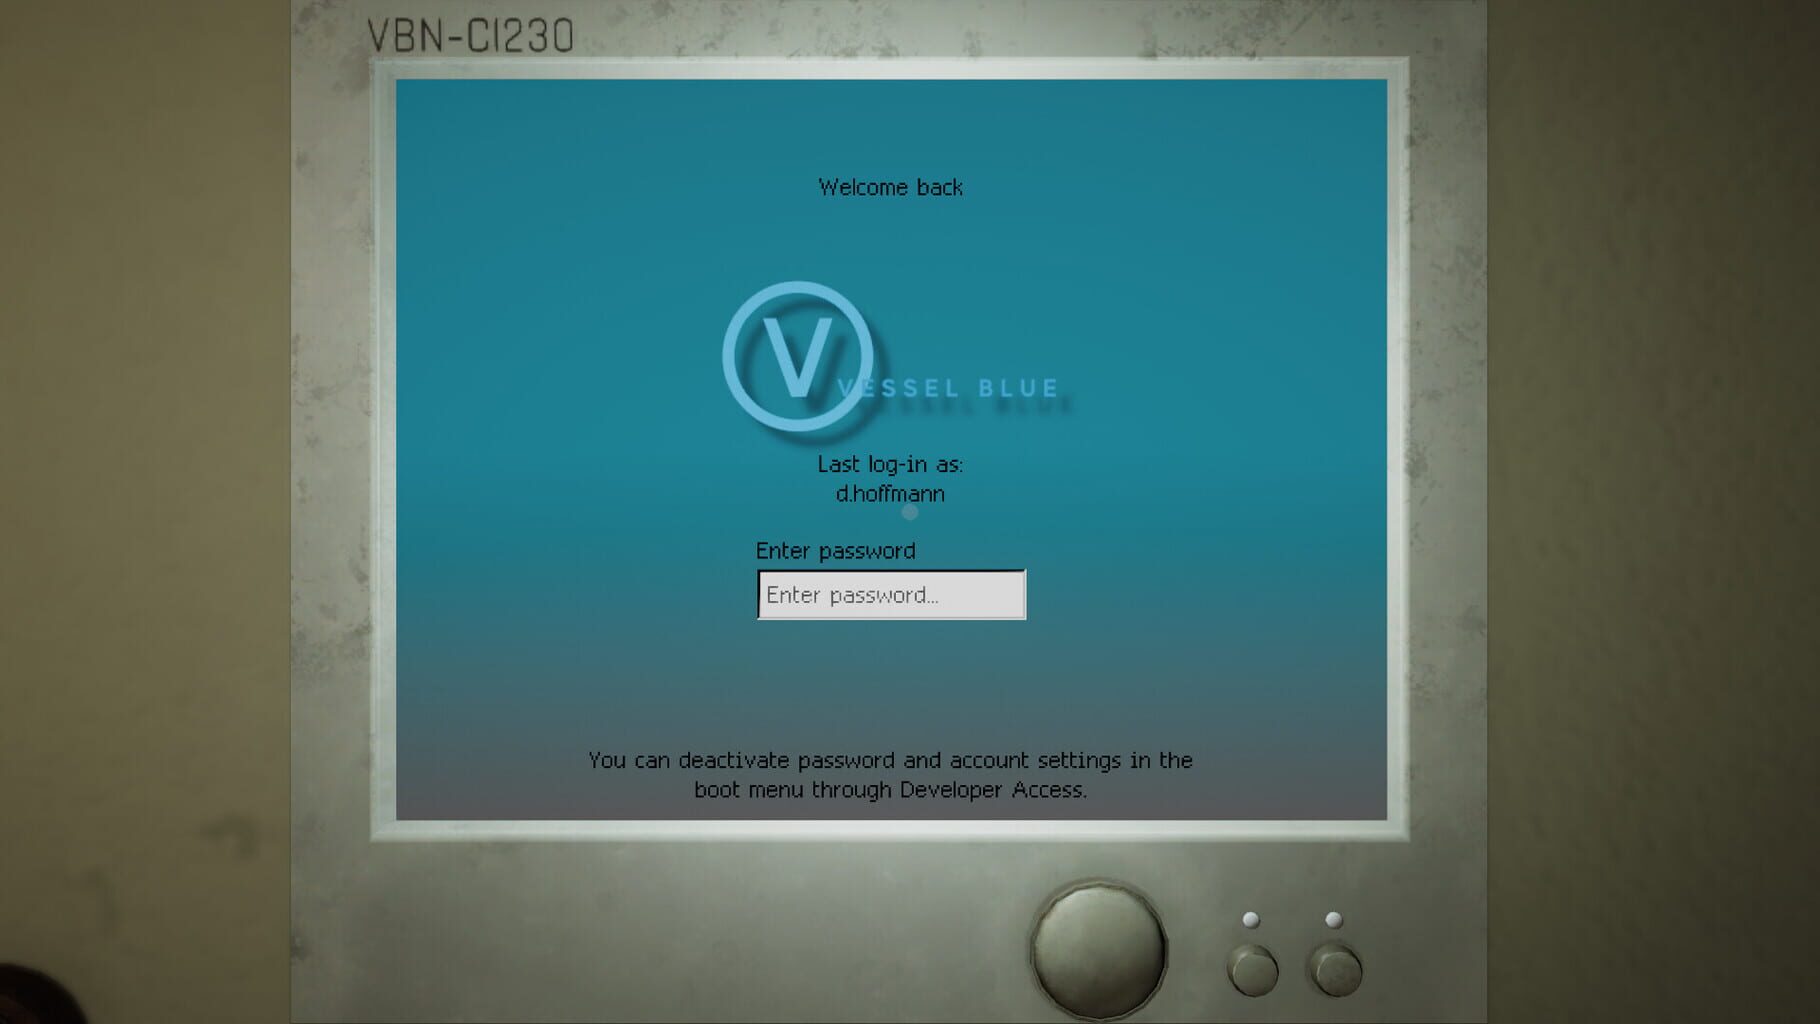 Captura de pantalla - Vessel Blue